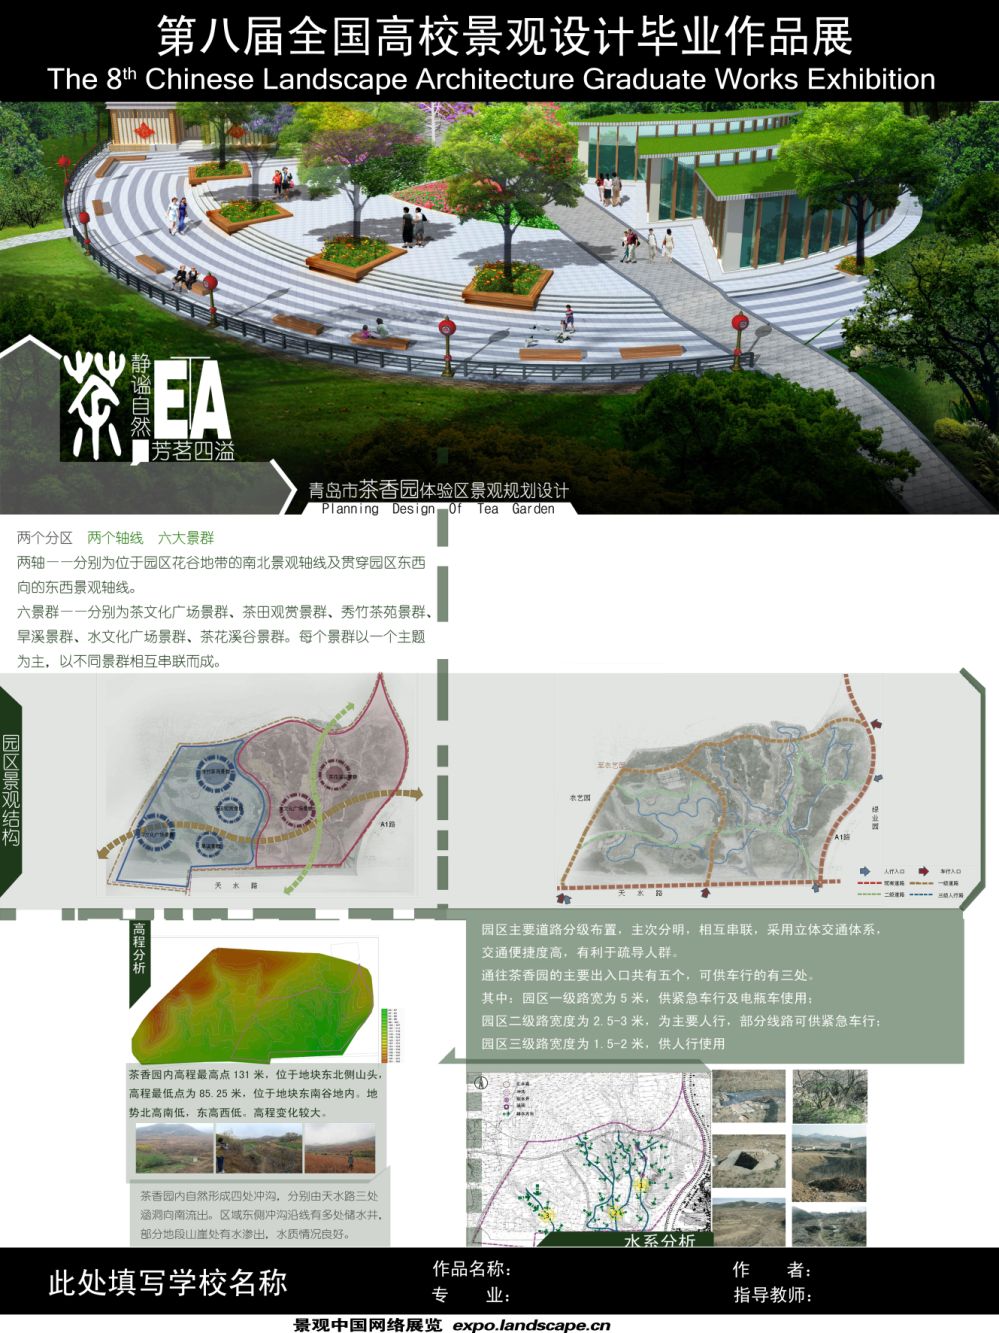 青岛市茶香园体验区景观规划设计-2